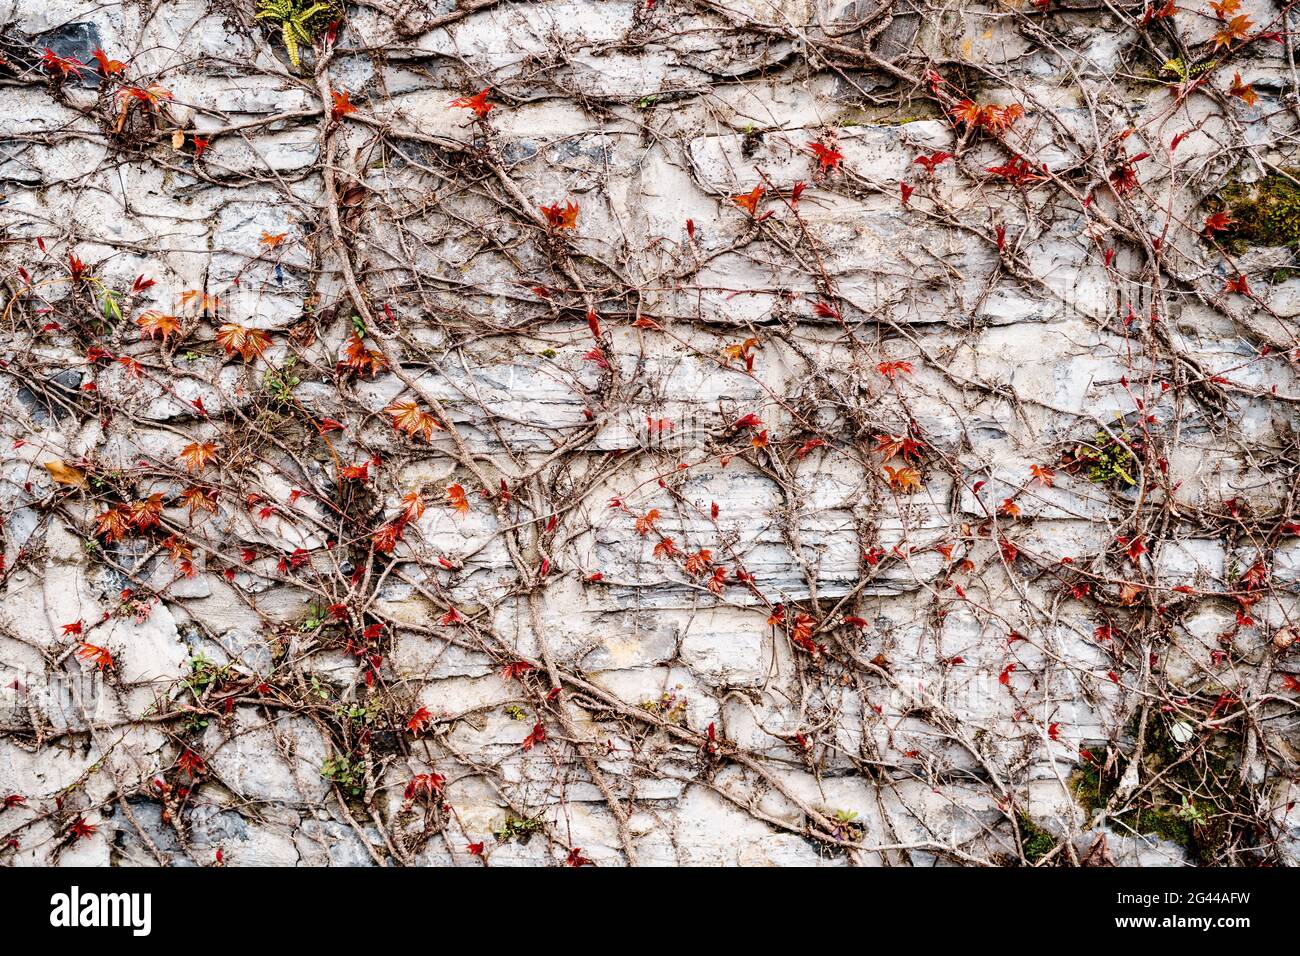 Rametti asciutti con piccole foglie rosse su una struttura di pietra grigia. Le piccole foglie rosse dell'uva da maiola fioriscono in primavera. Foto Stock